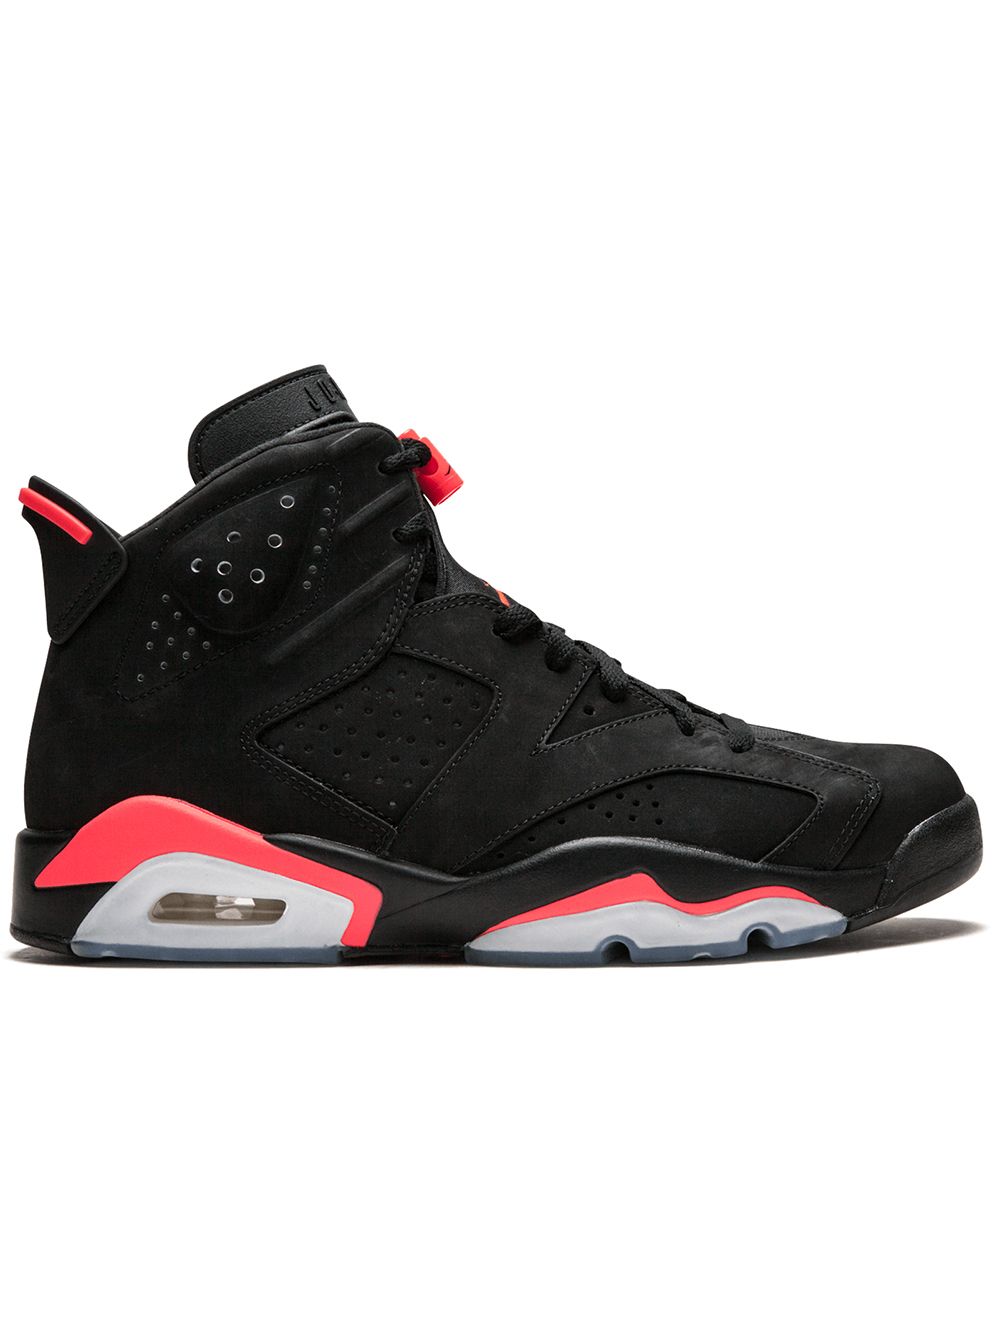 Jordan Air Jordan 6 Retro "Infrared" sneakers - Black